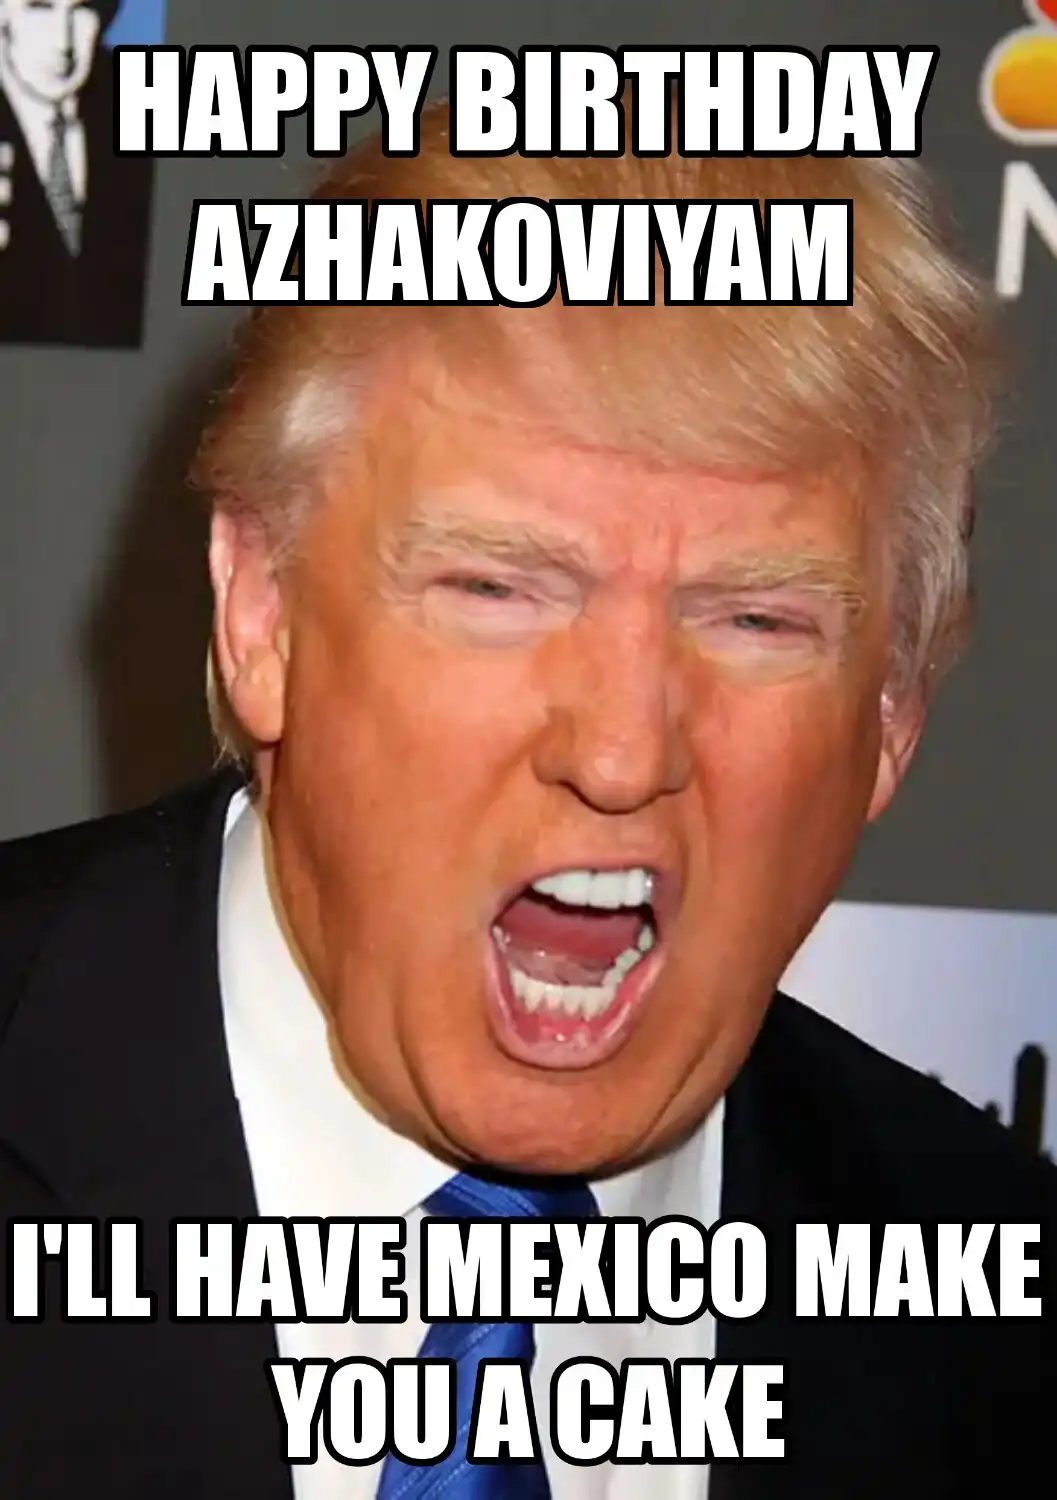 Happy Birthday Azhakoviyam Mexico Make You A Cake Meme